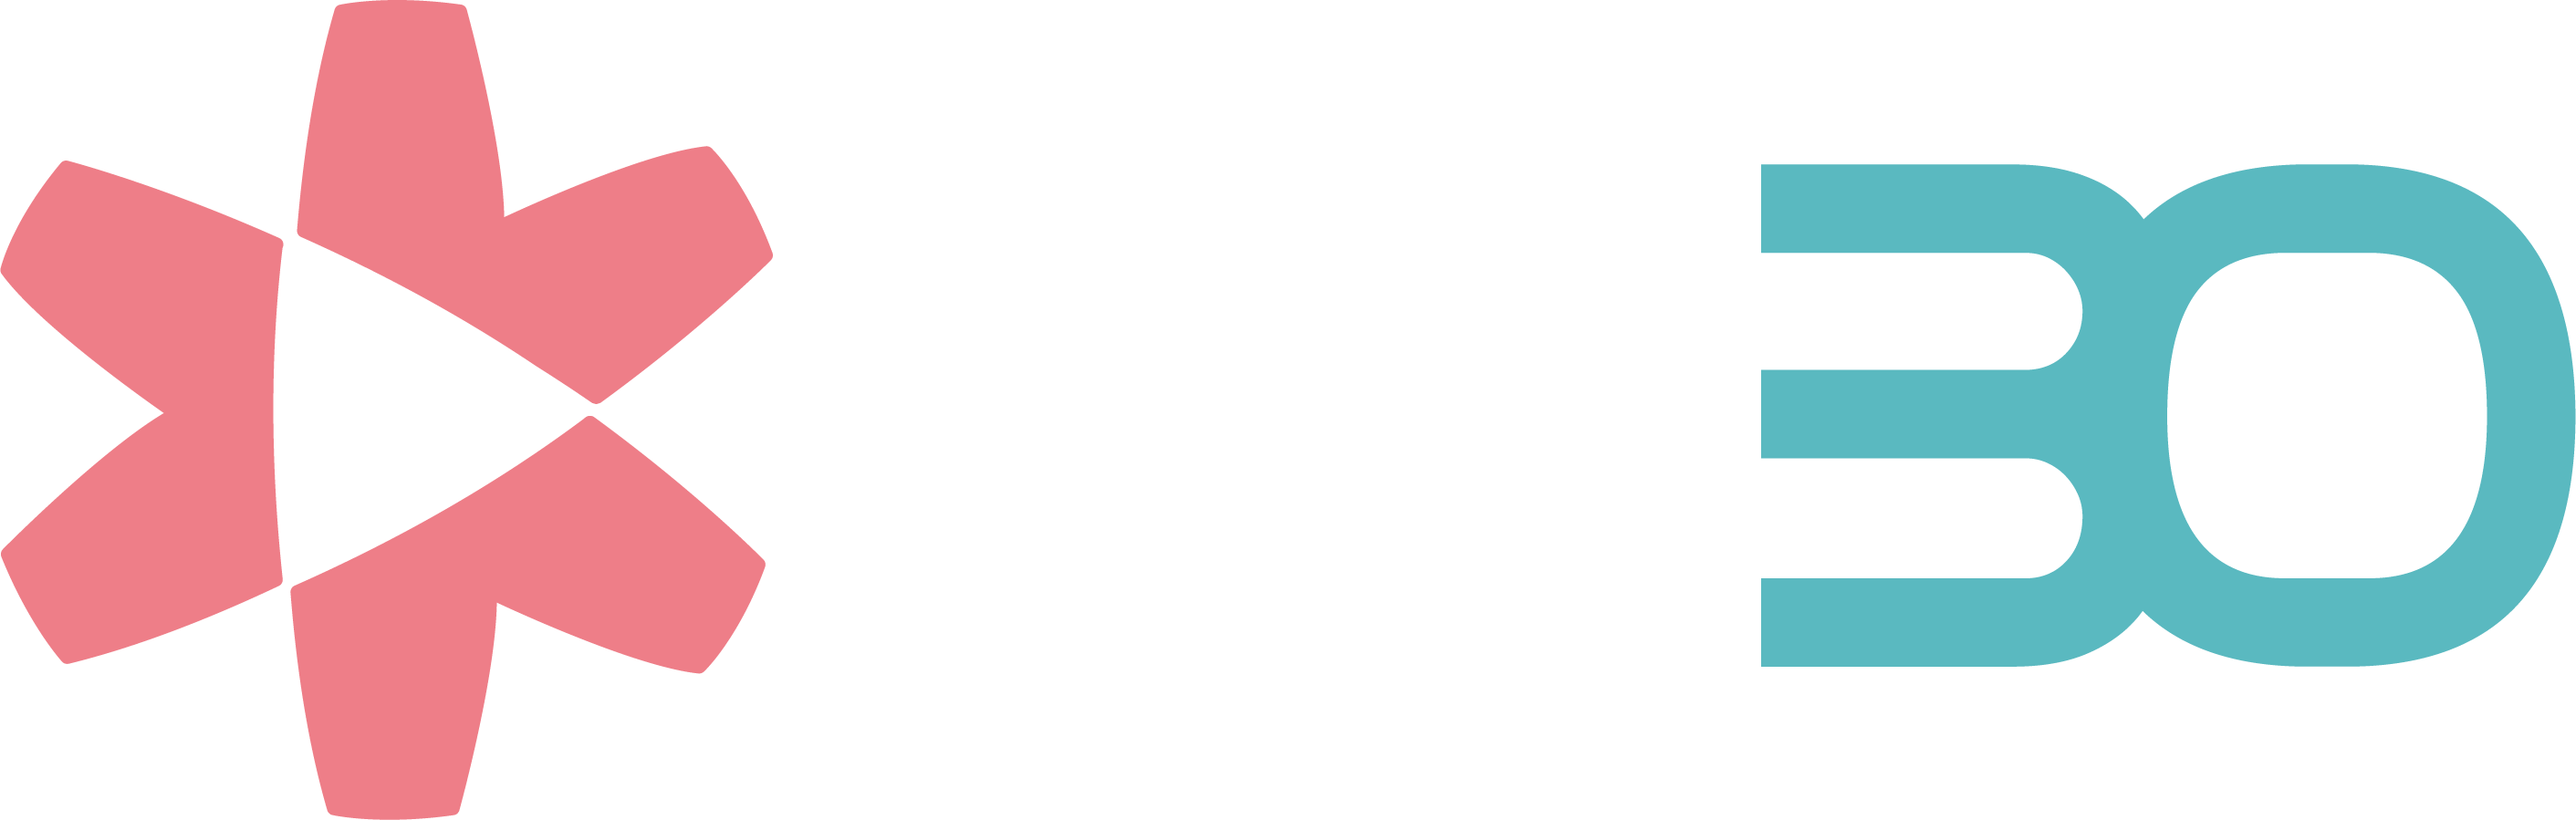 logo_vebo_white